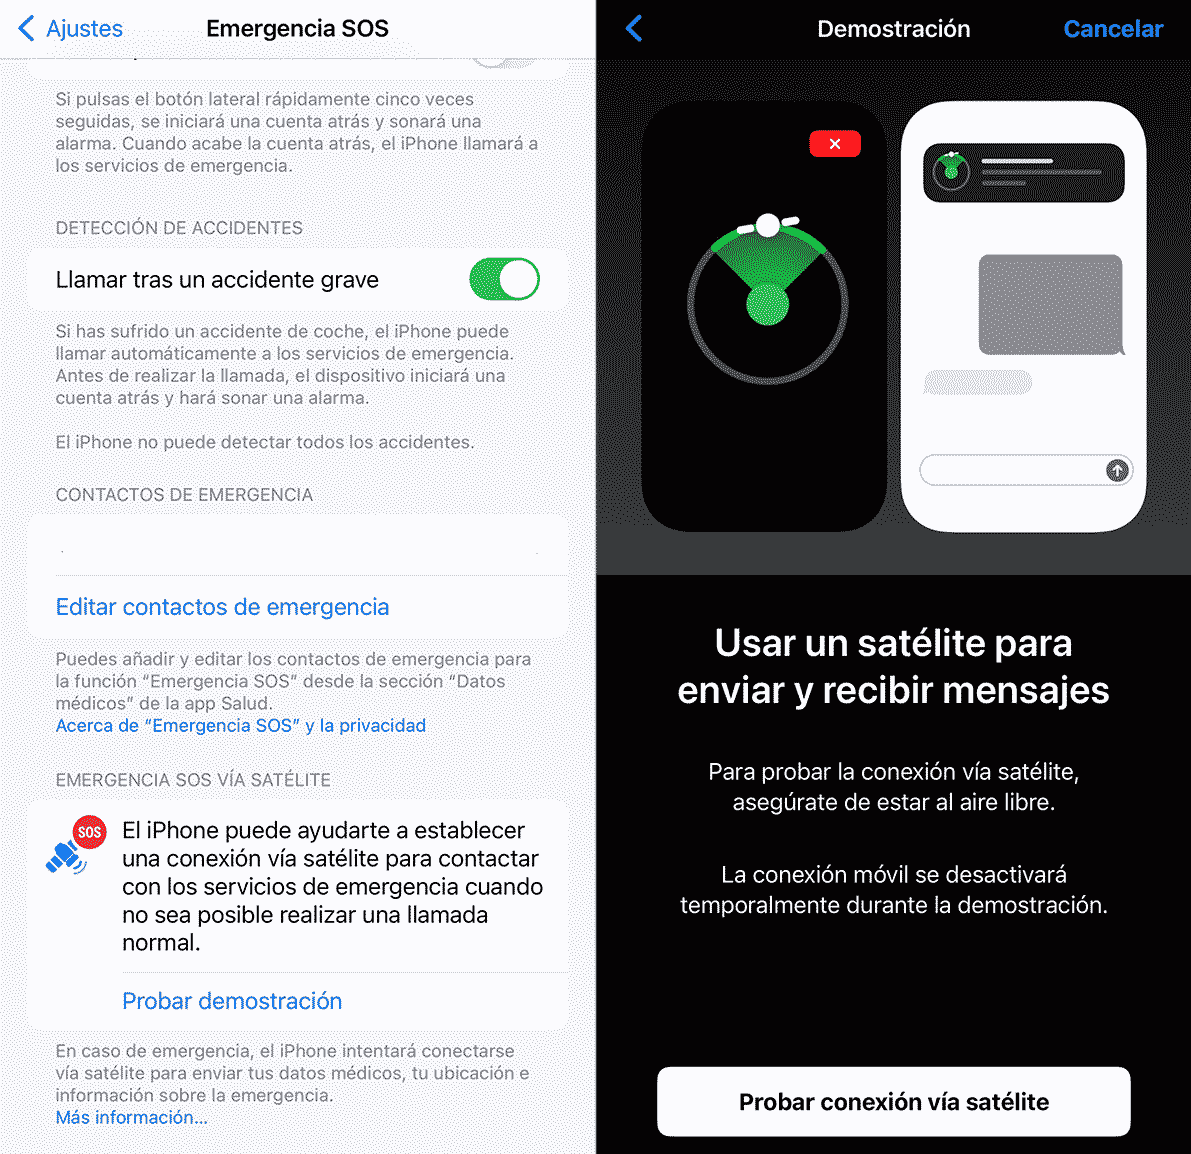 Explicación y demostración de la conexión satelital del iPhone en la App de Ajustes